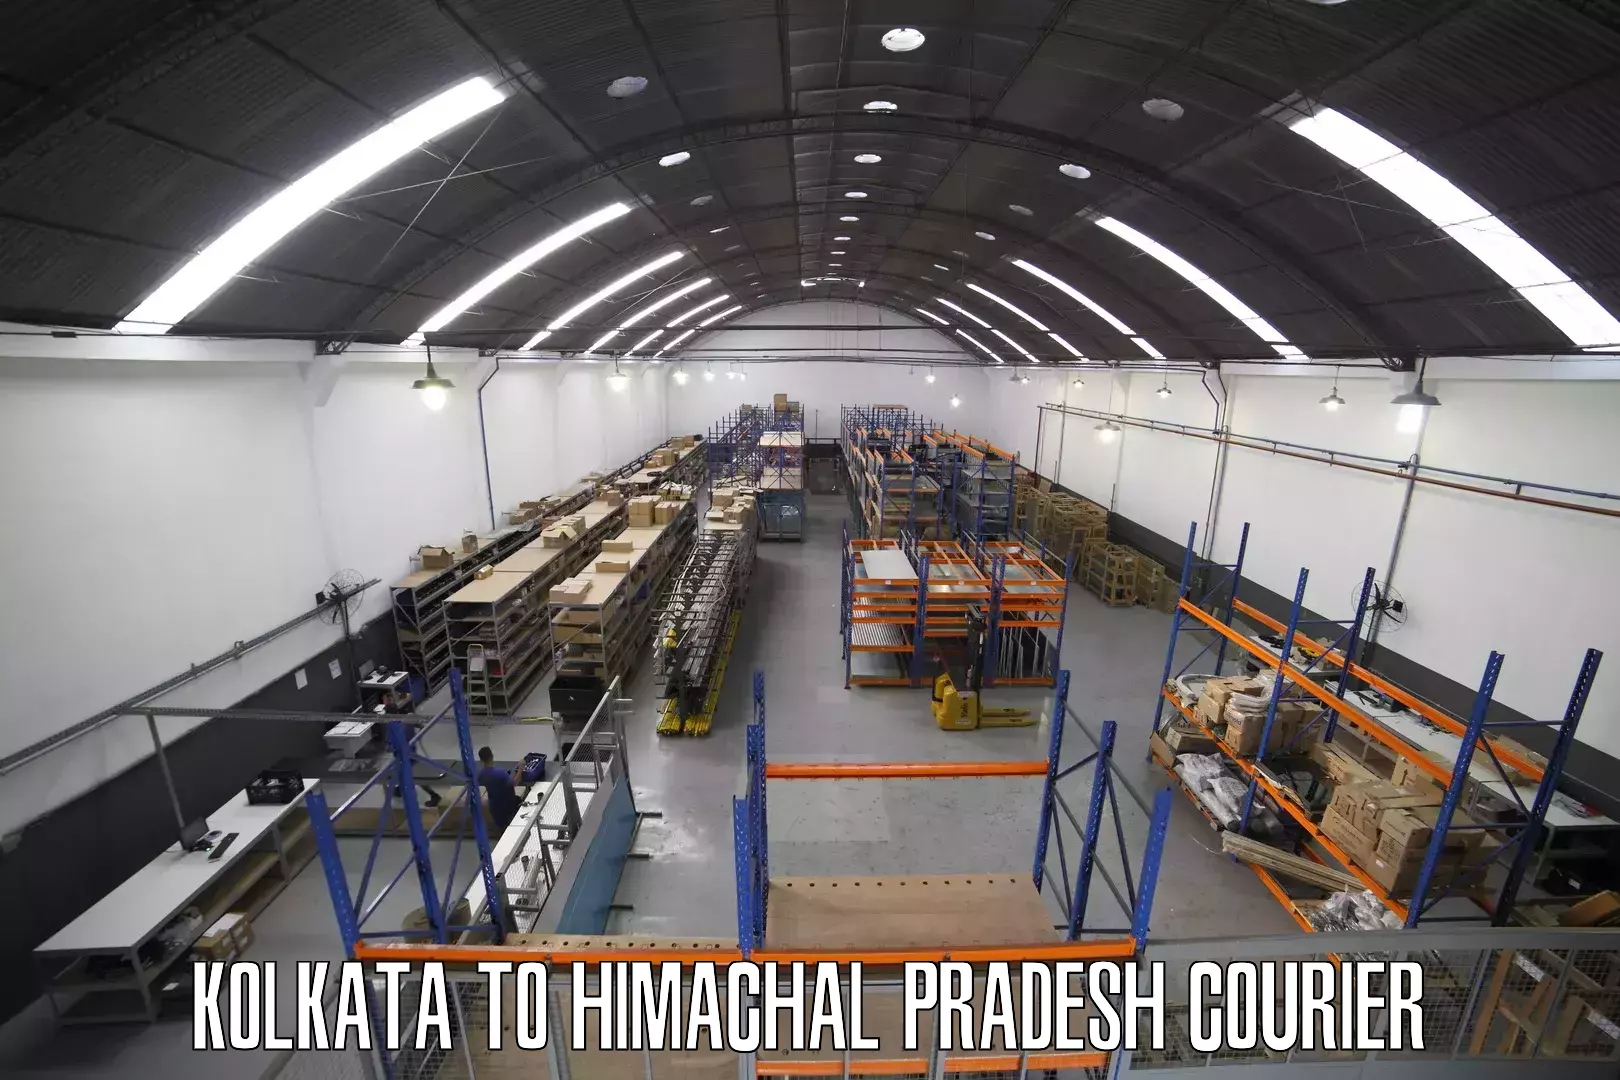 Digital courier platforms Kolkata to Himachal Pradesh